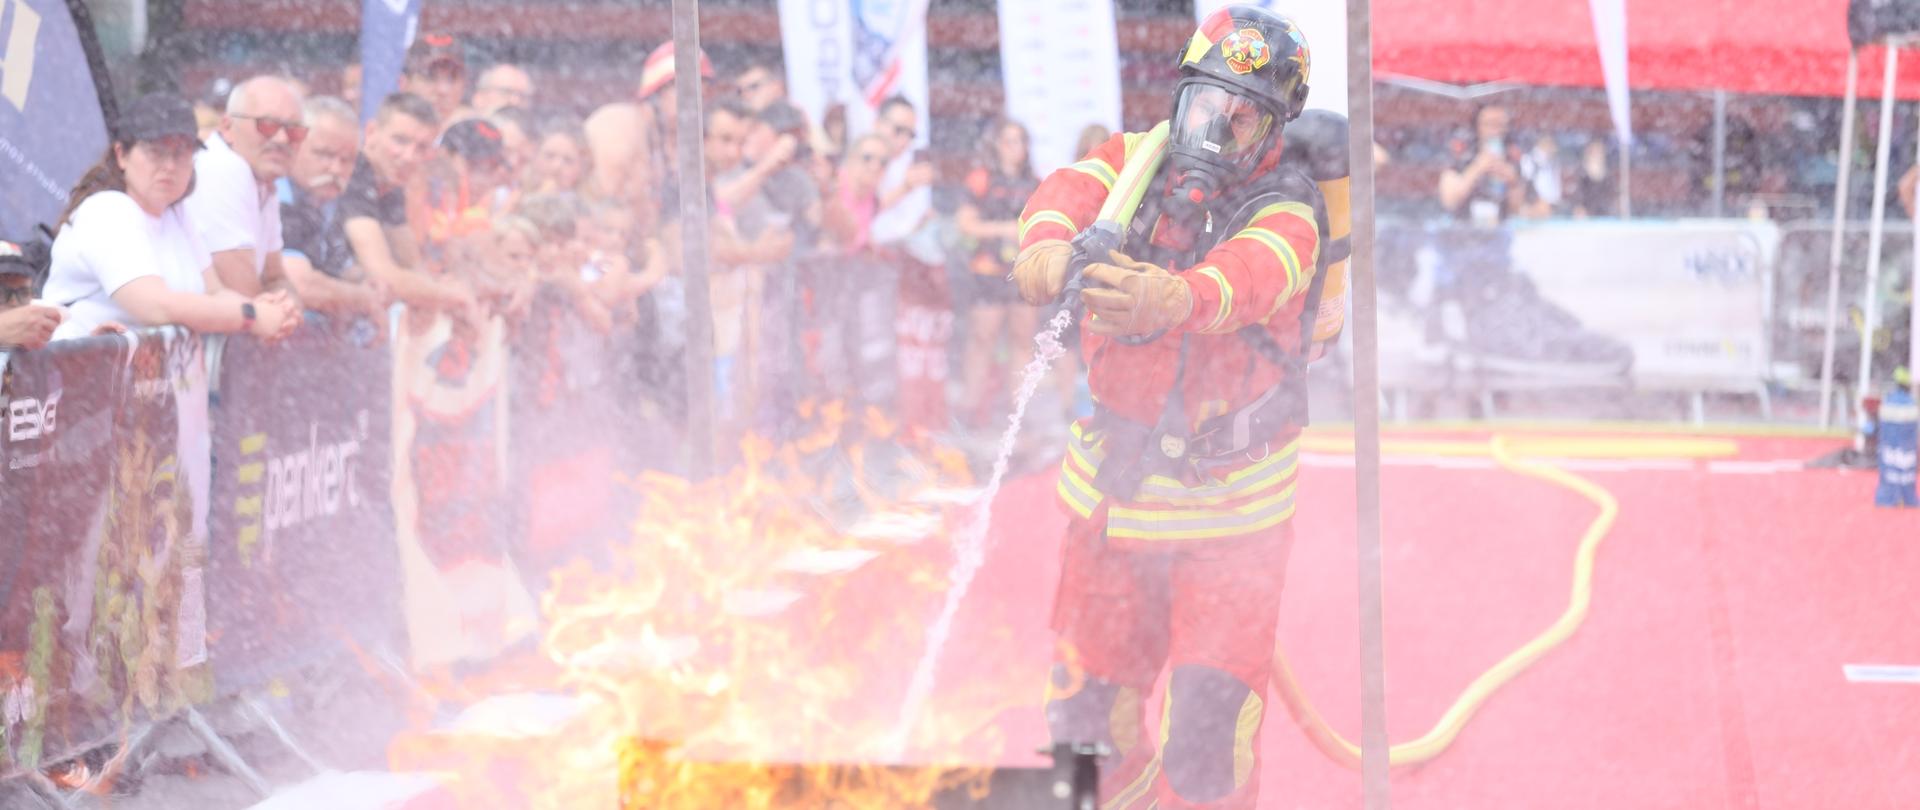 Strażak gaszący płomień podczas startu